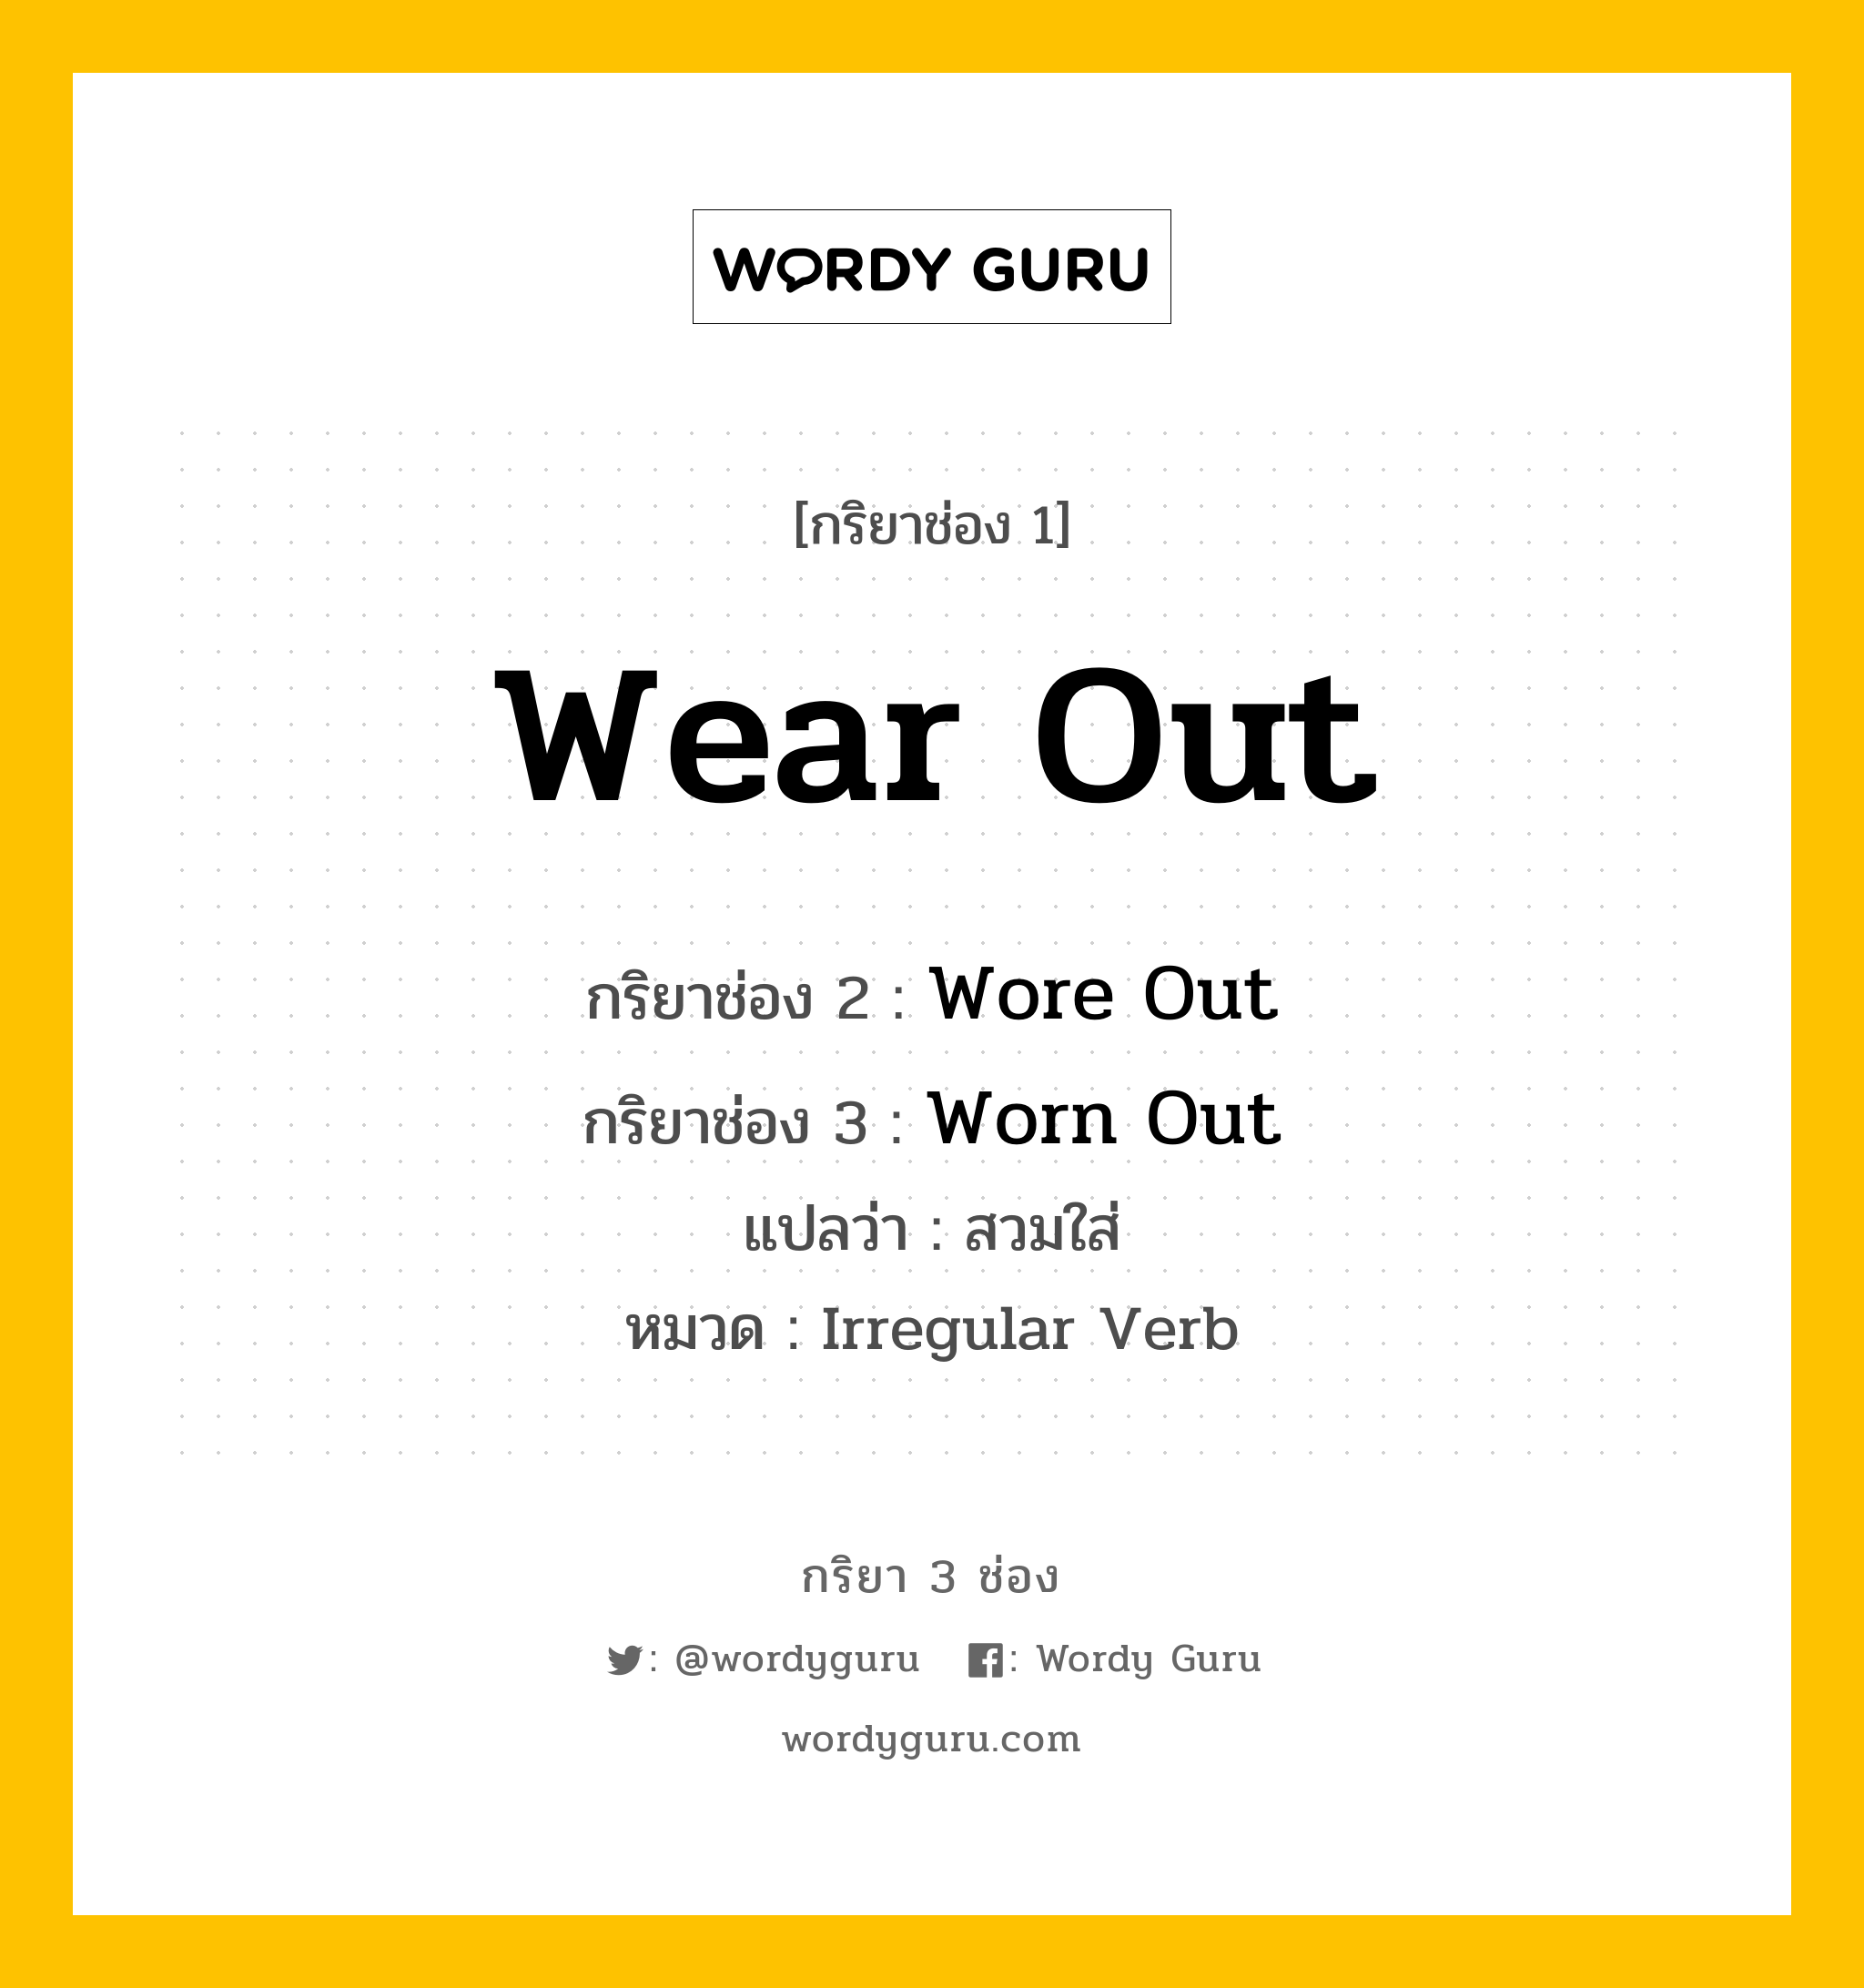 กริยา 3 ช่อง: Wear Out ช่อง 2 Wear Out ช่อง 3 คืออะไร, กริยาช่อง 1 Wear Out กริยาช่อง 2 Wore Out กริยาช่อง 3 Worn Out แปลว่า สวมใส่ หมวด Irregular Verb หมวด Irregular Verb